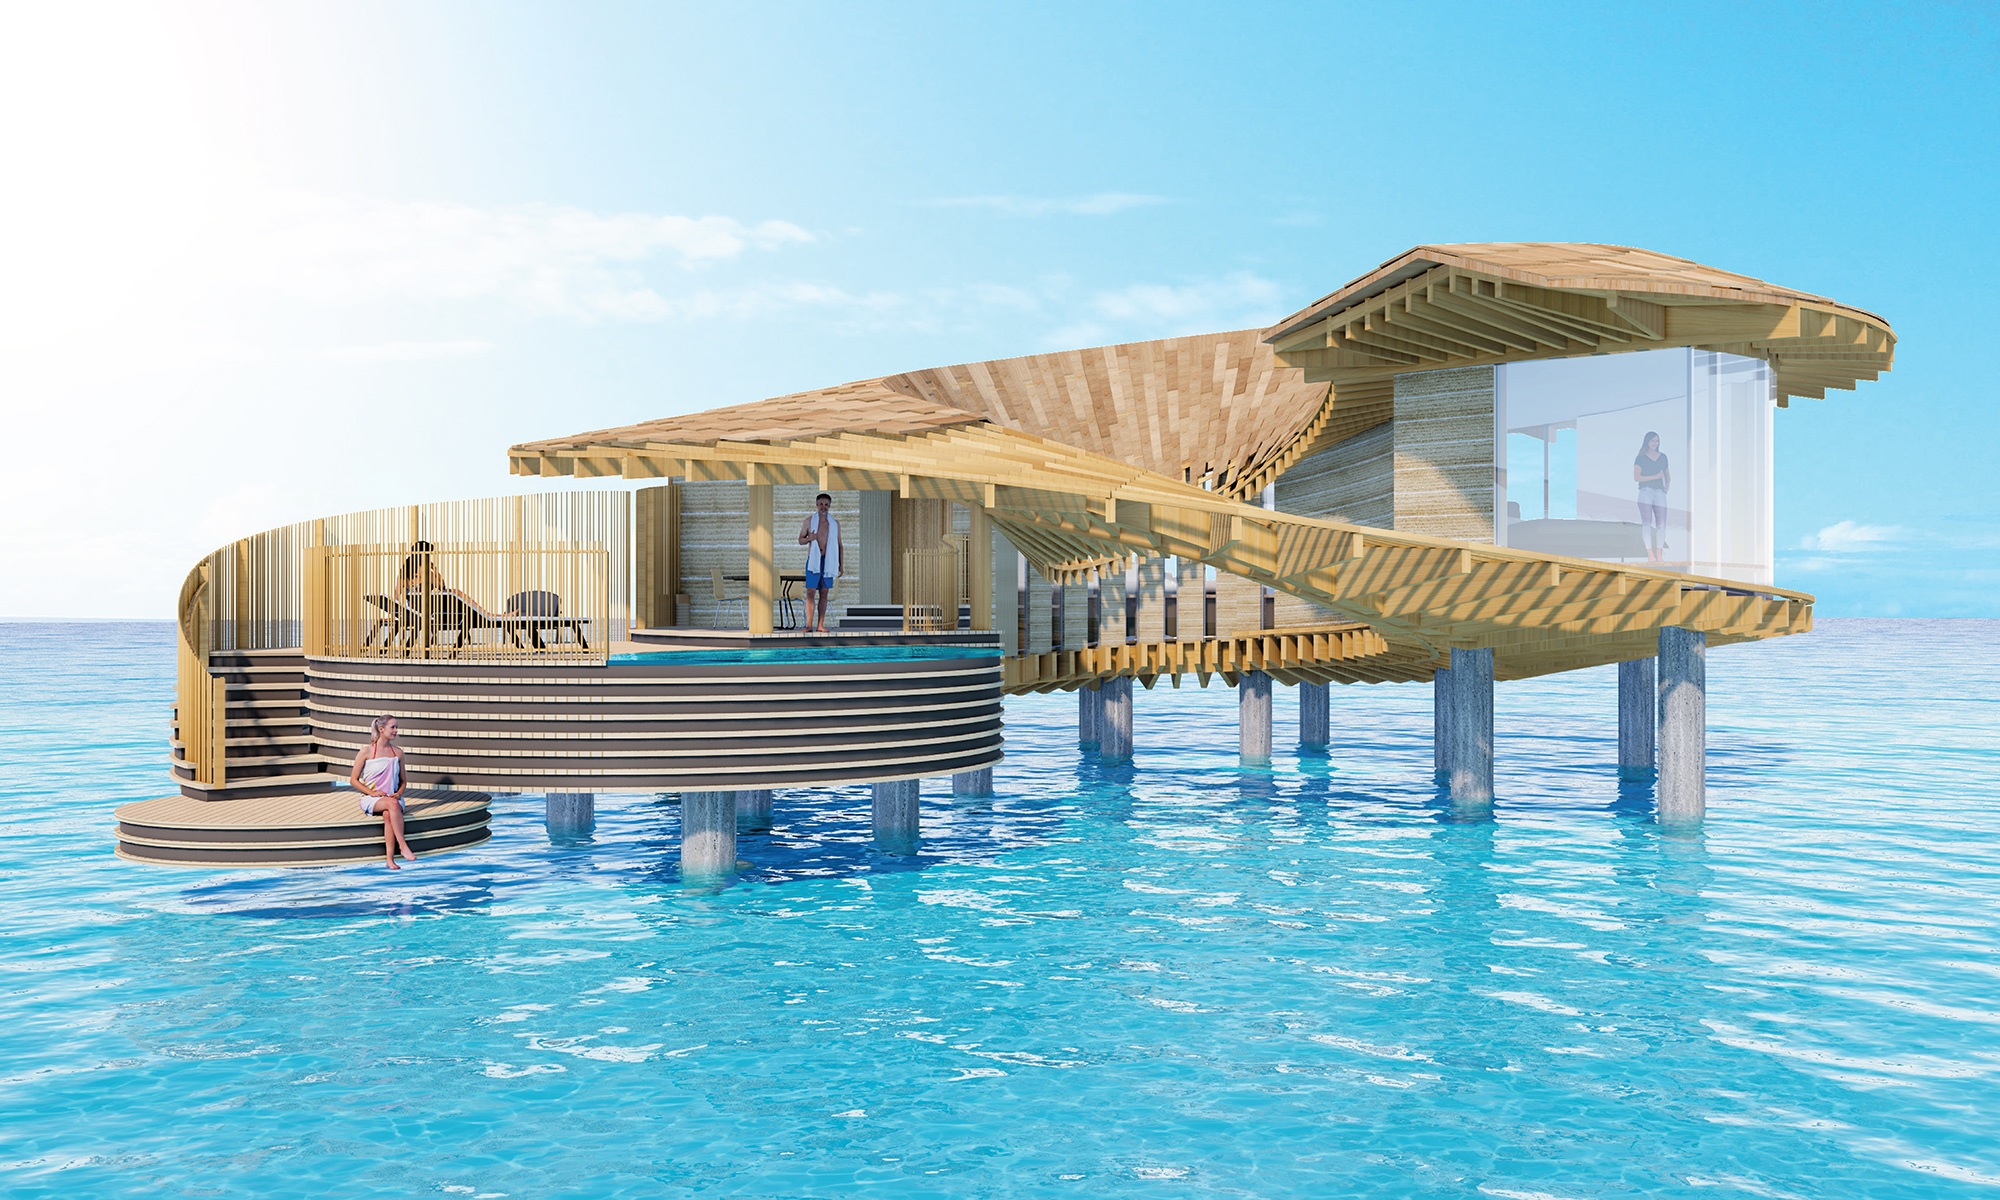 Coral Villa des Hotelkomplexes Ummahat Island Resort im Roten Meer, entworfen vom japanischen Architekten Kengo Kuma